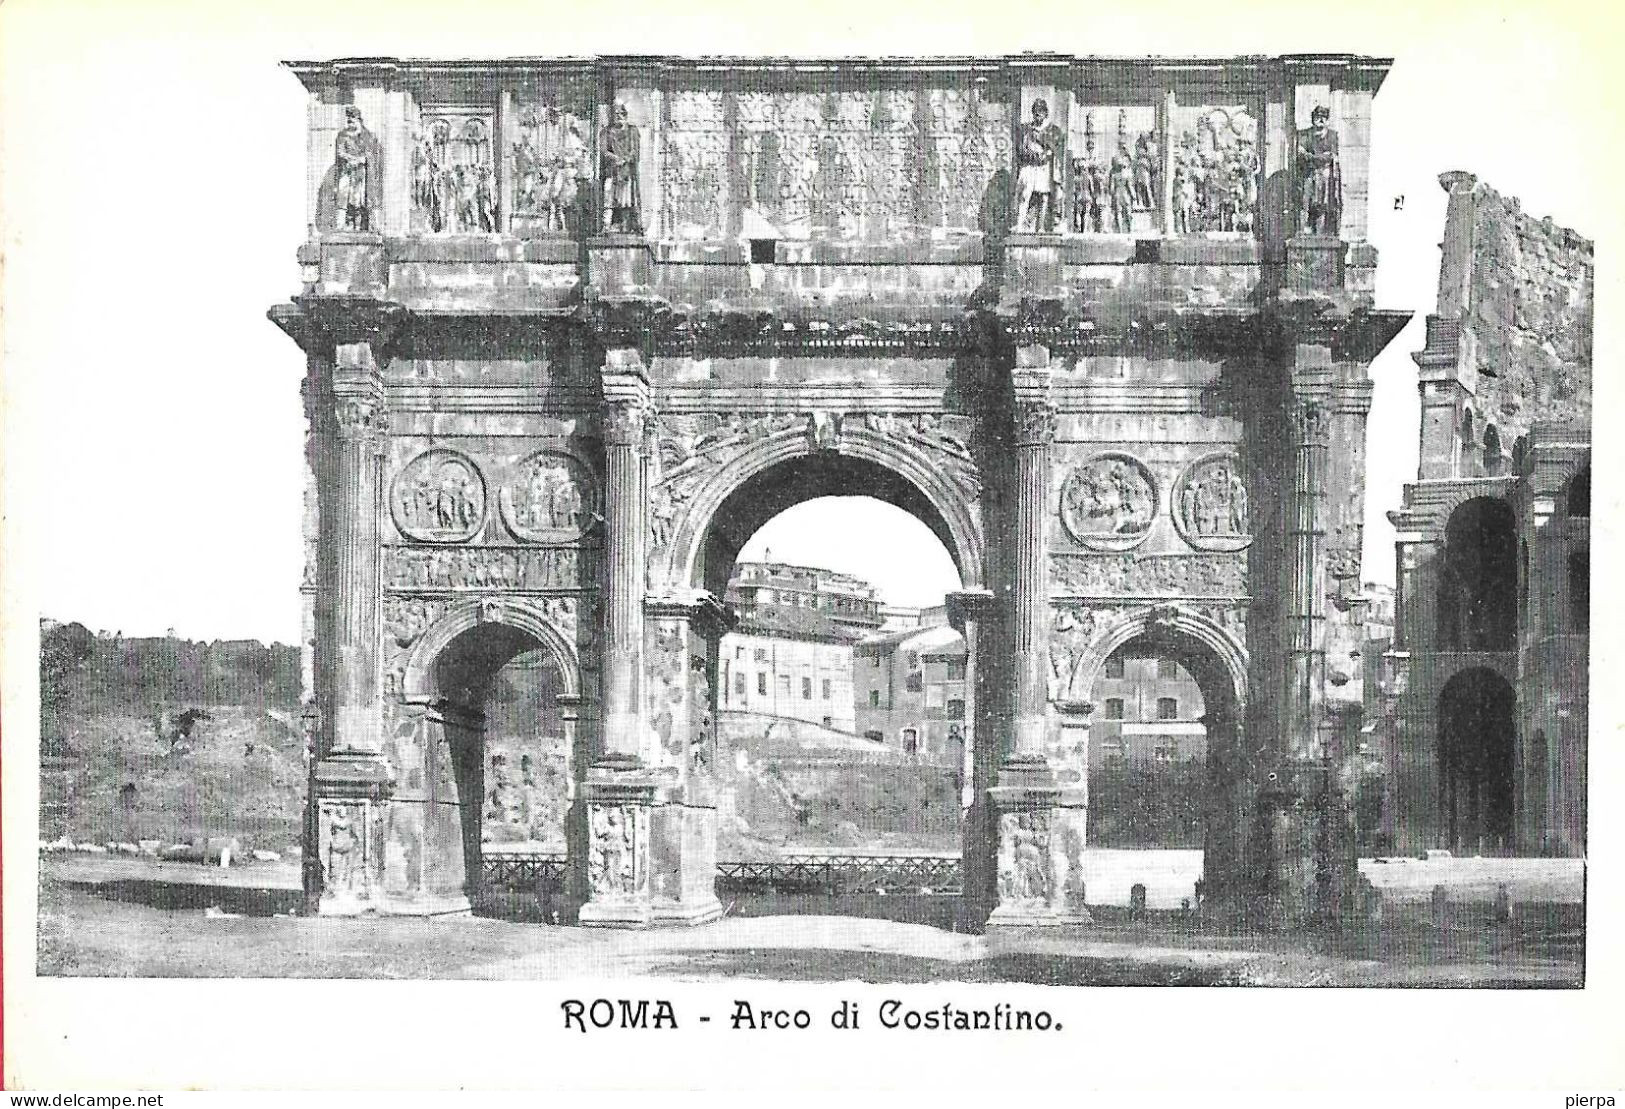 ROMA - ARCO DI COSTANTINO - FORMATO PICCOLO - EDIZ. ORIGINALE ANNI 30 - NUOVA - Andere Monumente & Gebäude